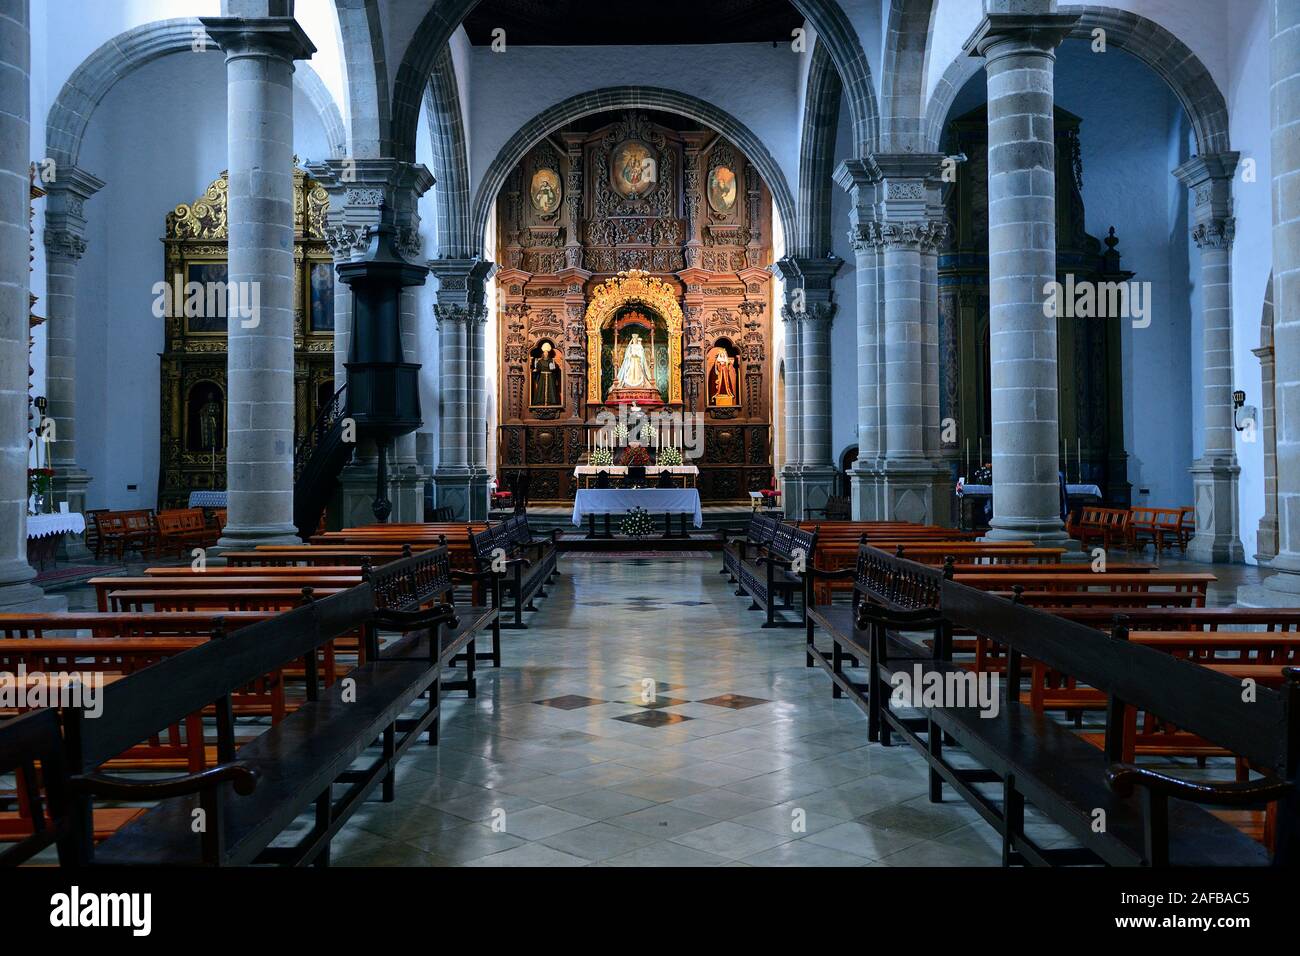 Ehemalige Klosterkirche San Agustin, La Orotava, Teneriffa, Kanarische Inseln, Spanien Stock Photo